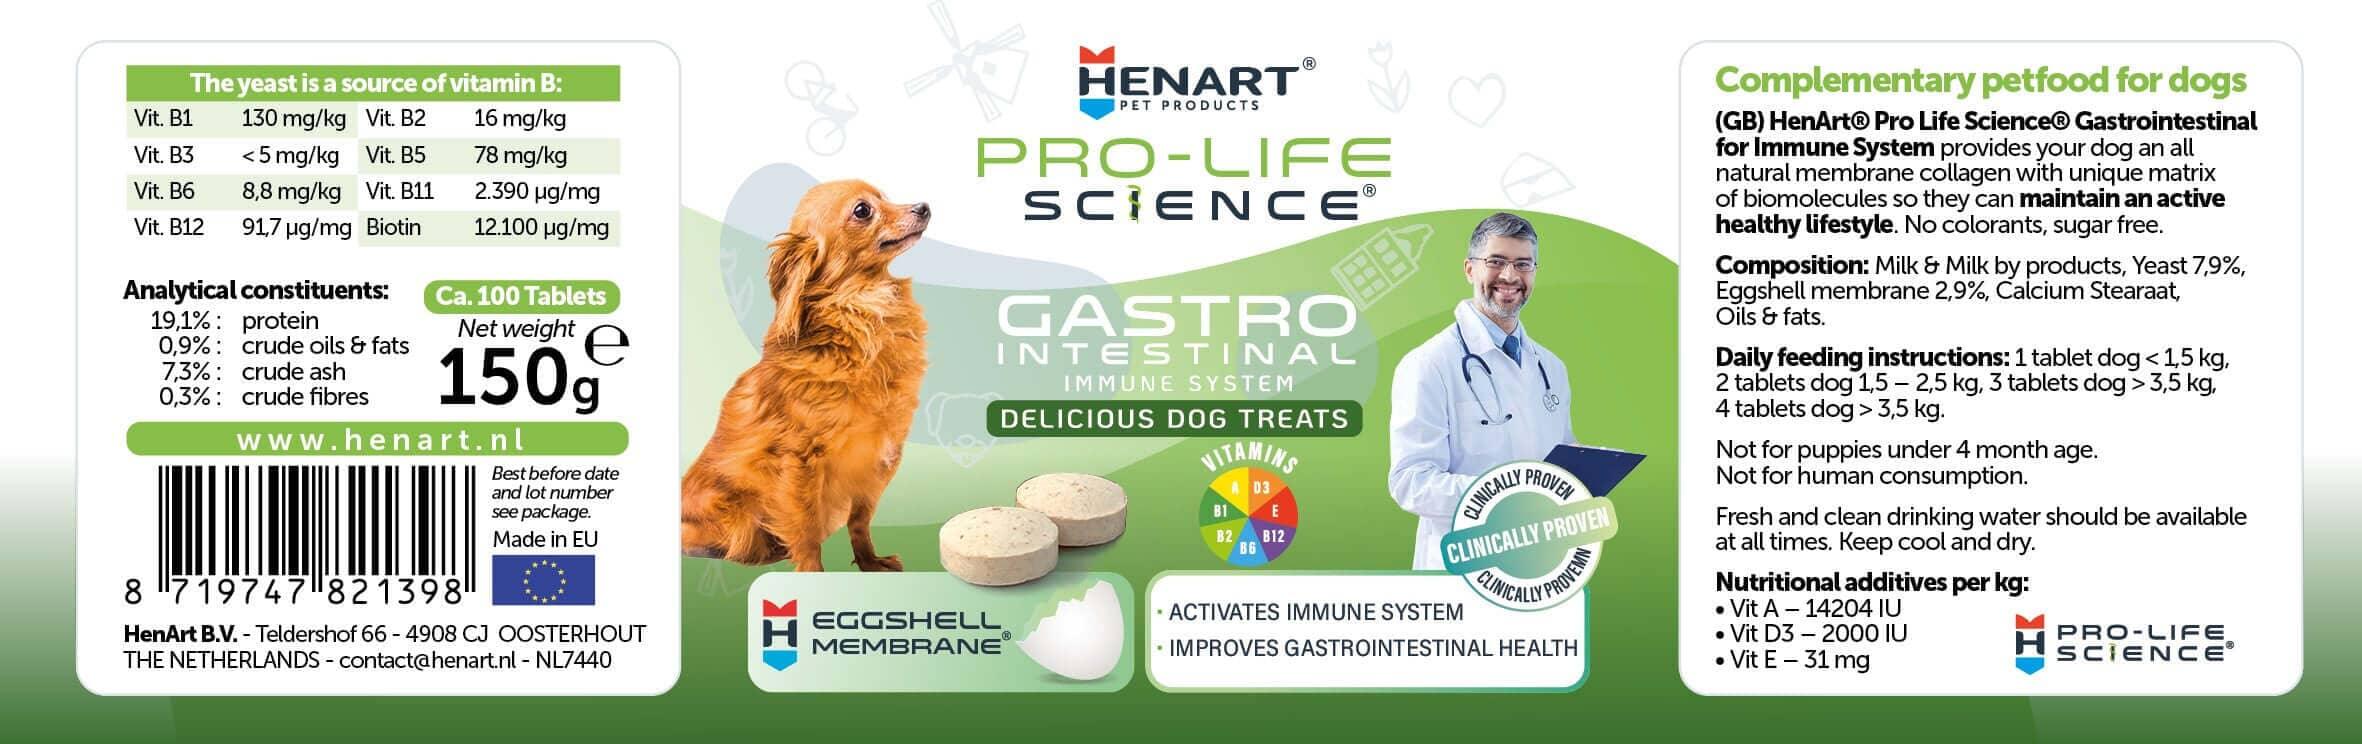 Hunde-Nahrungsergänzung für Magen-Darm Gesundheit & starkes Immunsystem - HenArt® | Nachhaltiges Tierfutter für Hund und Katze 